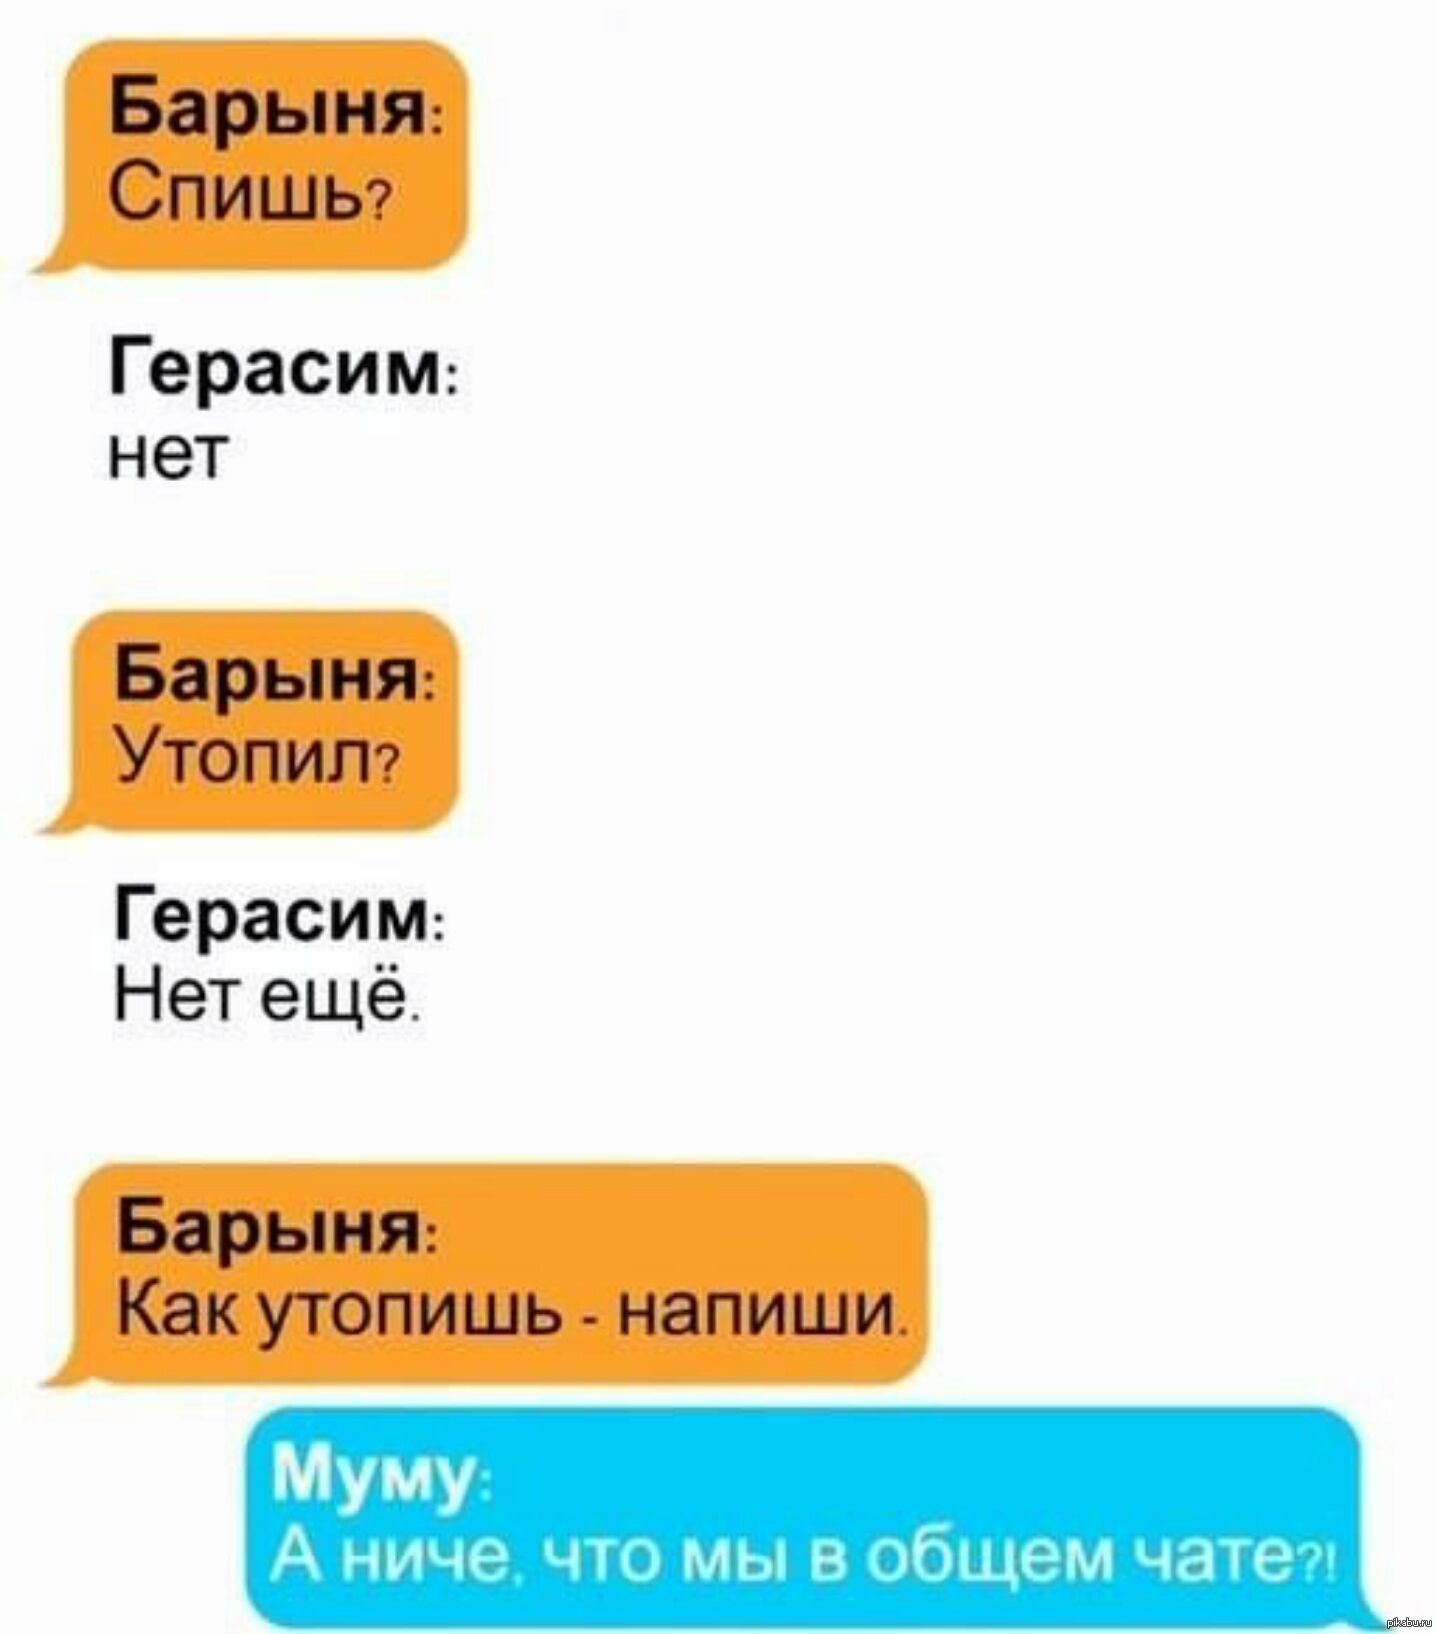 СМС Чат Иркутск Знакомства